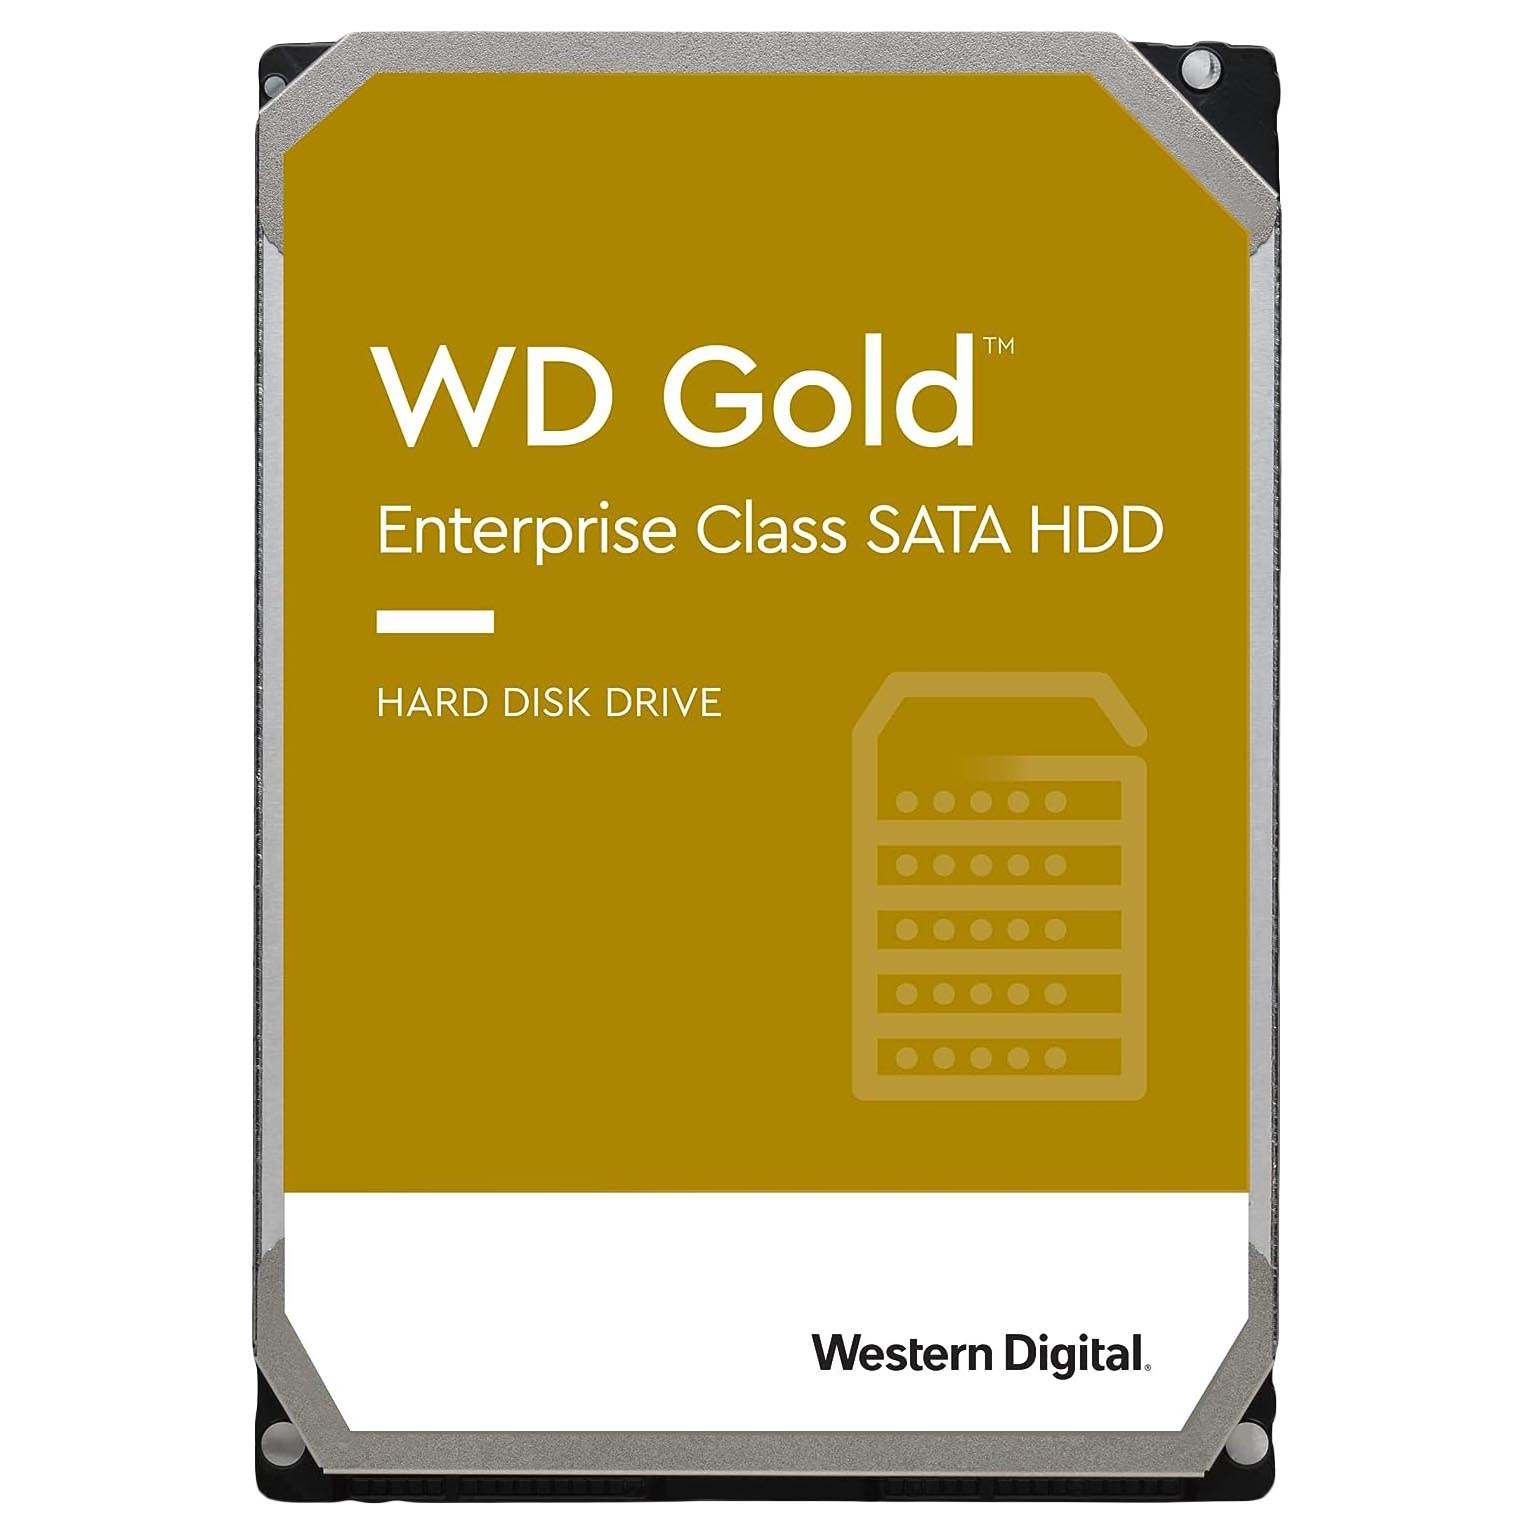 Внутренний жесткий диск Western Digital WD Gold Enterprise Class, WD6003VRYZ, 6Тб внутренний жесткий диск western digital gold 3 5 8 тб wd8004fryz